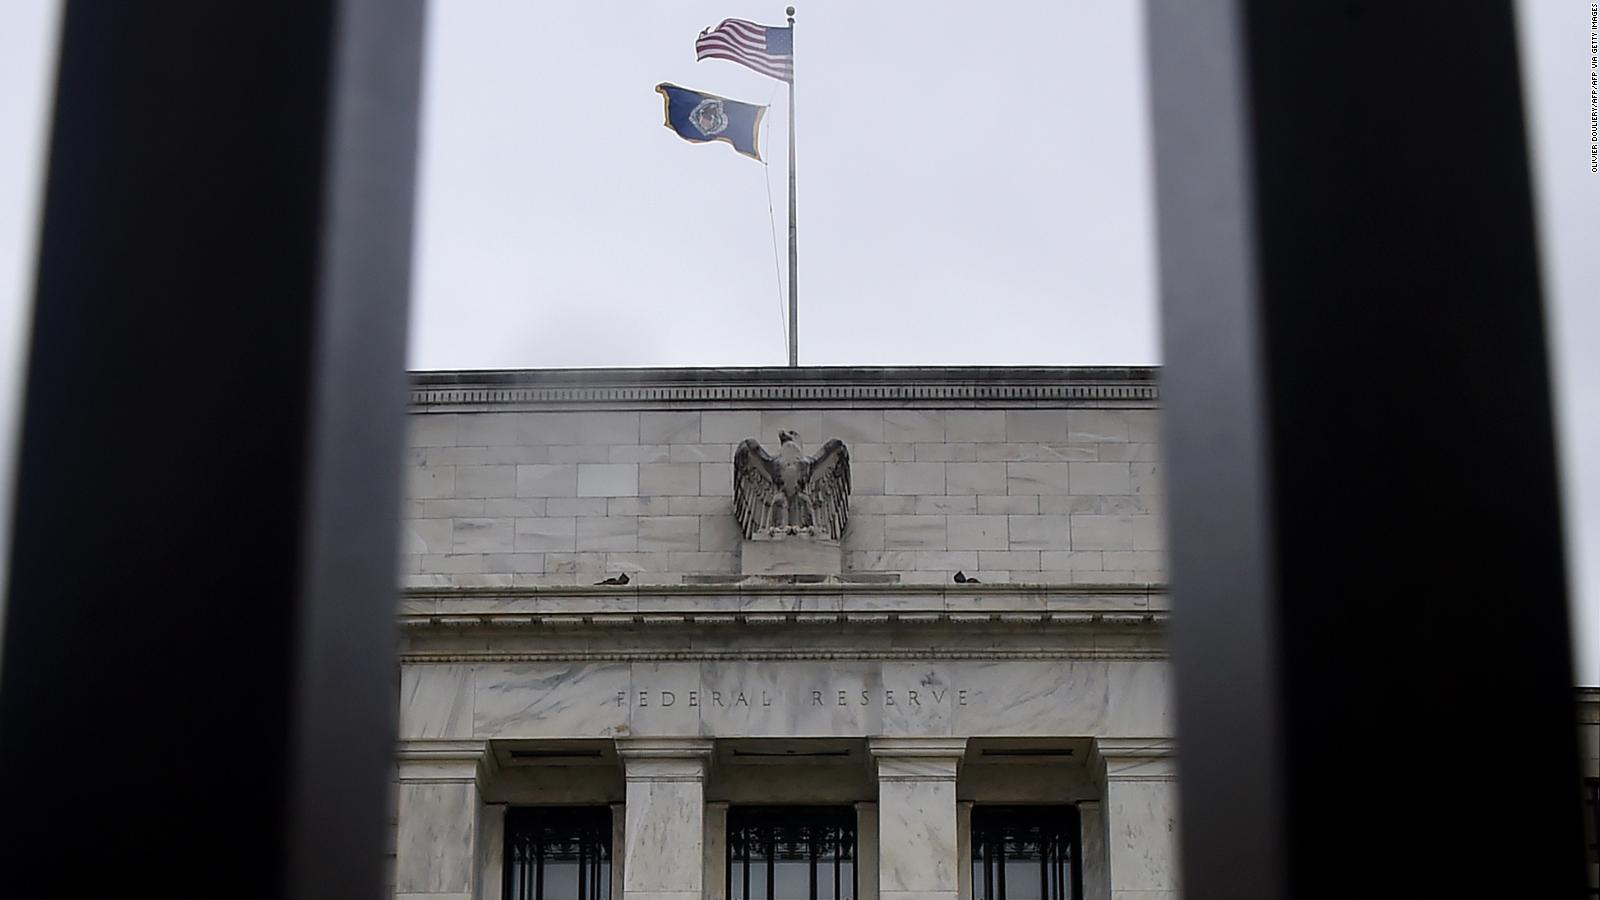 La Fed sube los tipos de interés medio punto, señal de que la inflación se está desacelerando